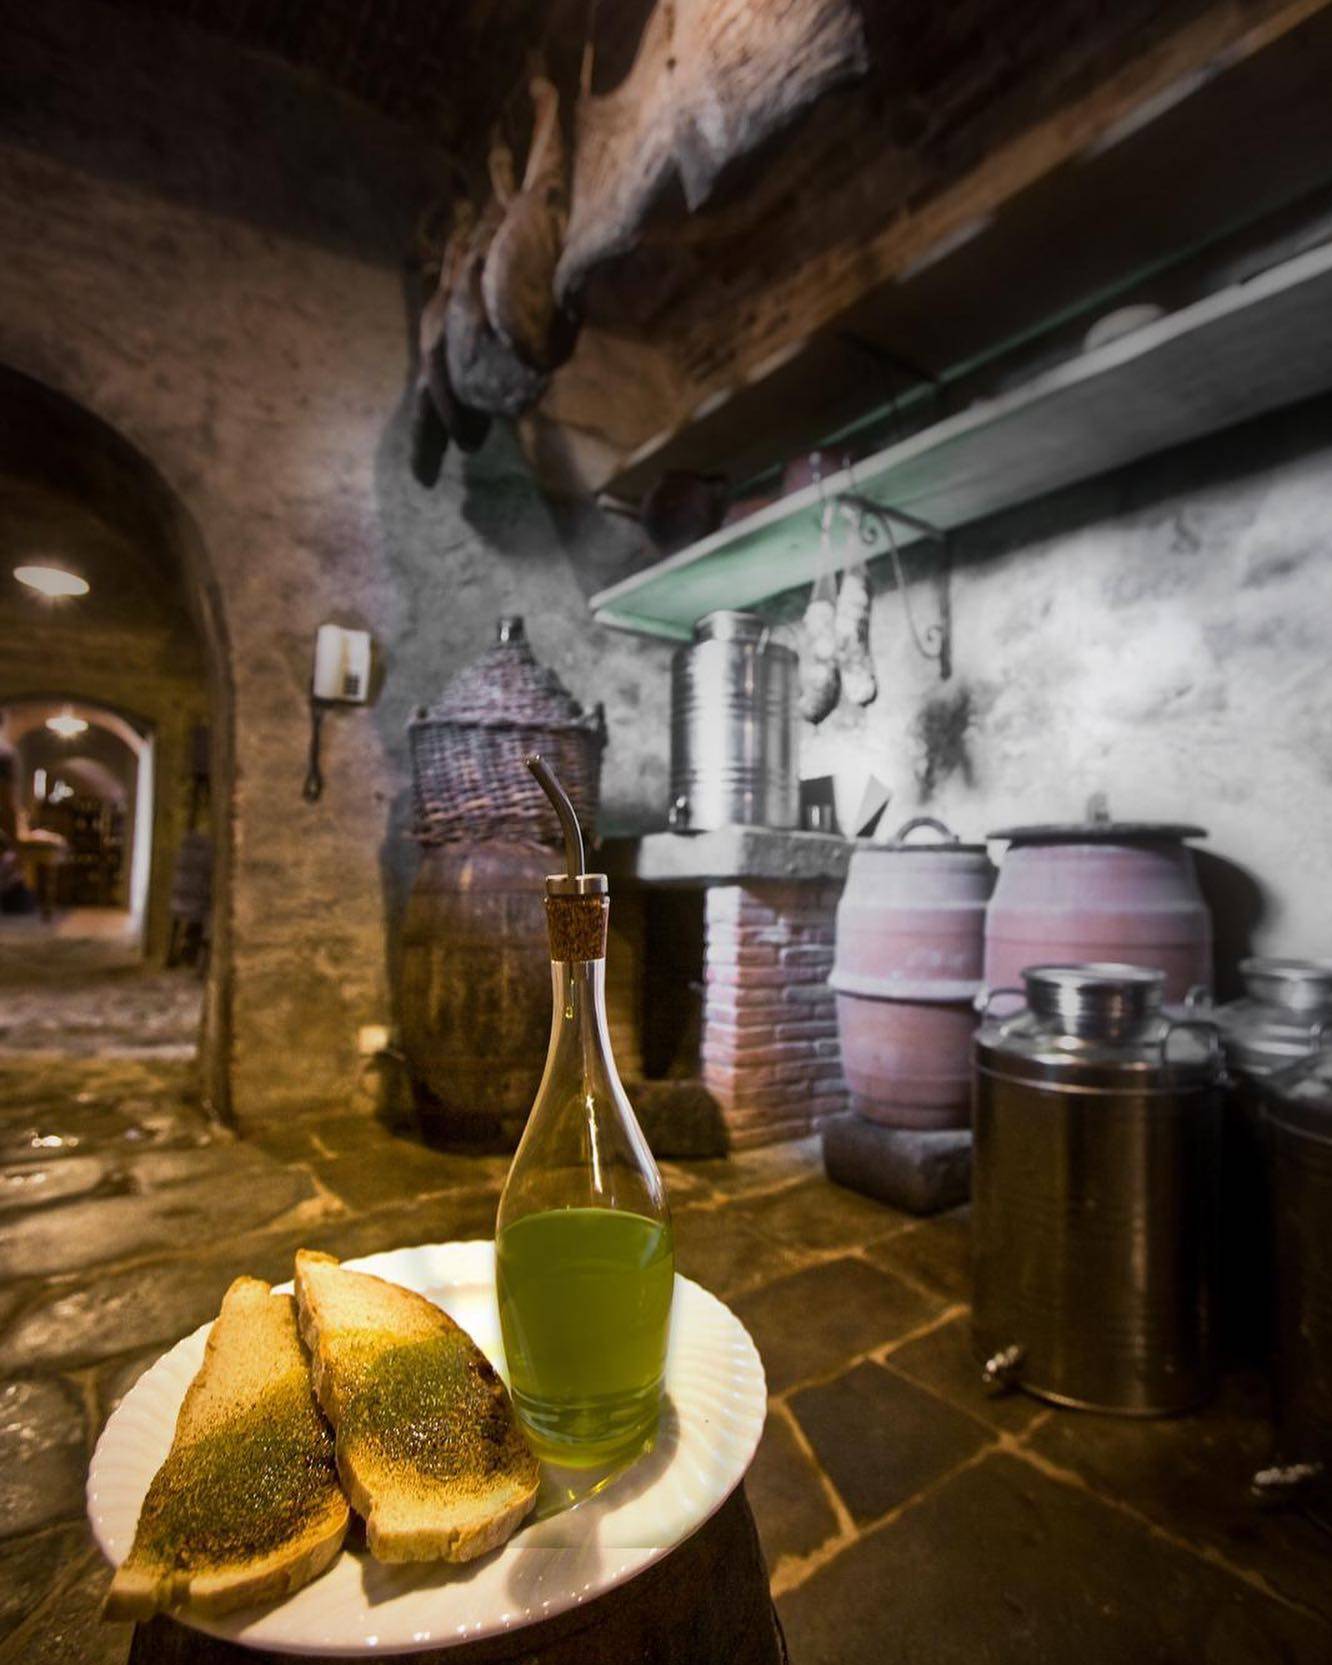 2020. Raccolta olive.

Le olive ballavano attraverso il mulino per produrre il potente gusto dell’olio. Non c’è modo migliore che assaporarlo col un pizzico di sale su una calda bruschetta.
.
.
.
.
.
.
.
.

#olioextraverginediolivadiqualità